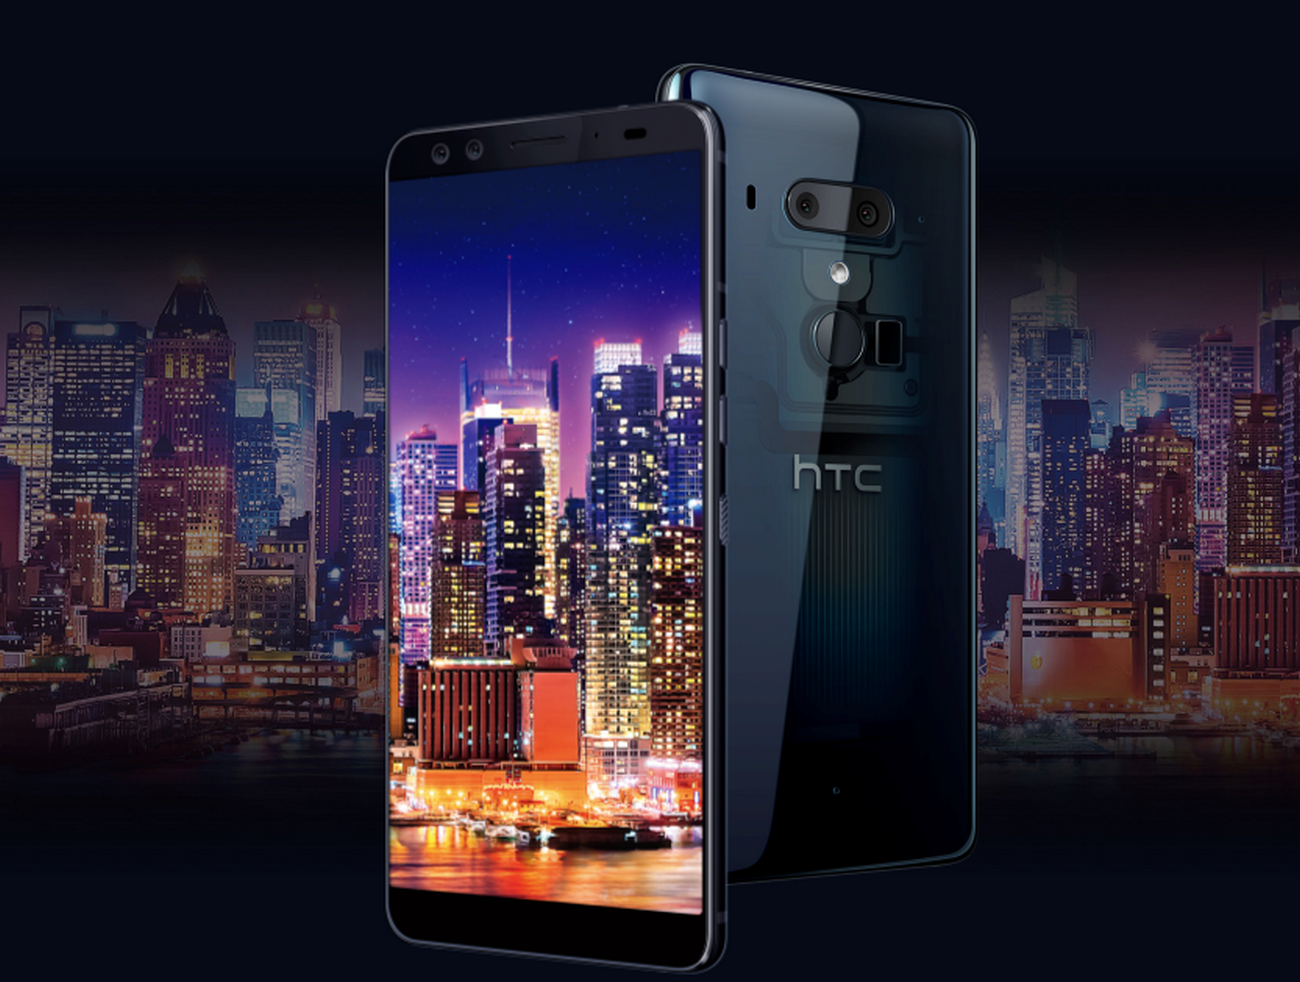 رسميًا HTC اعلن عن هاتفها الجديد HTC U12 Plus ... المراجعة الشاملة